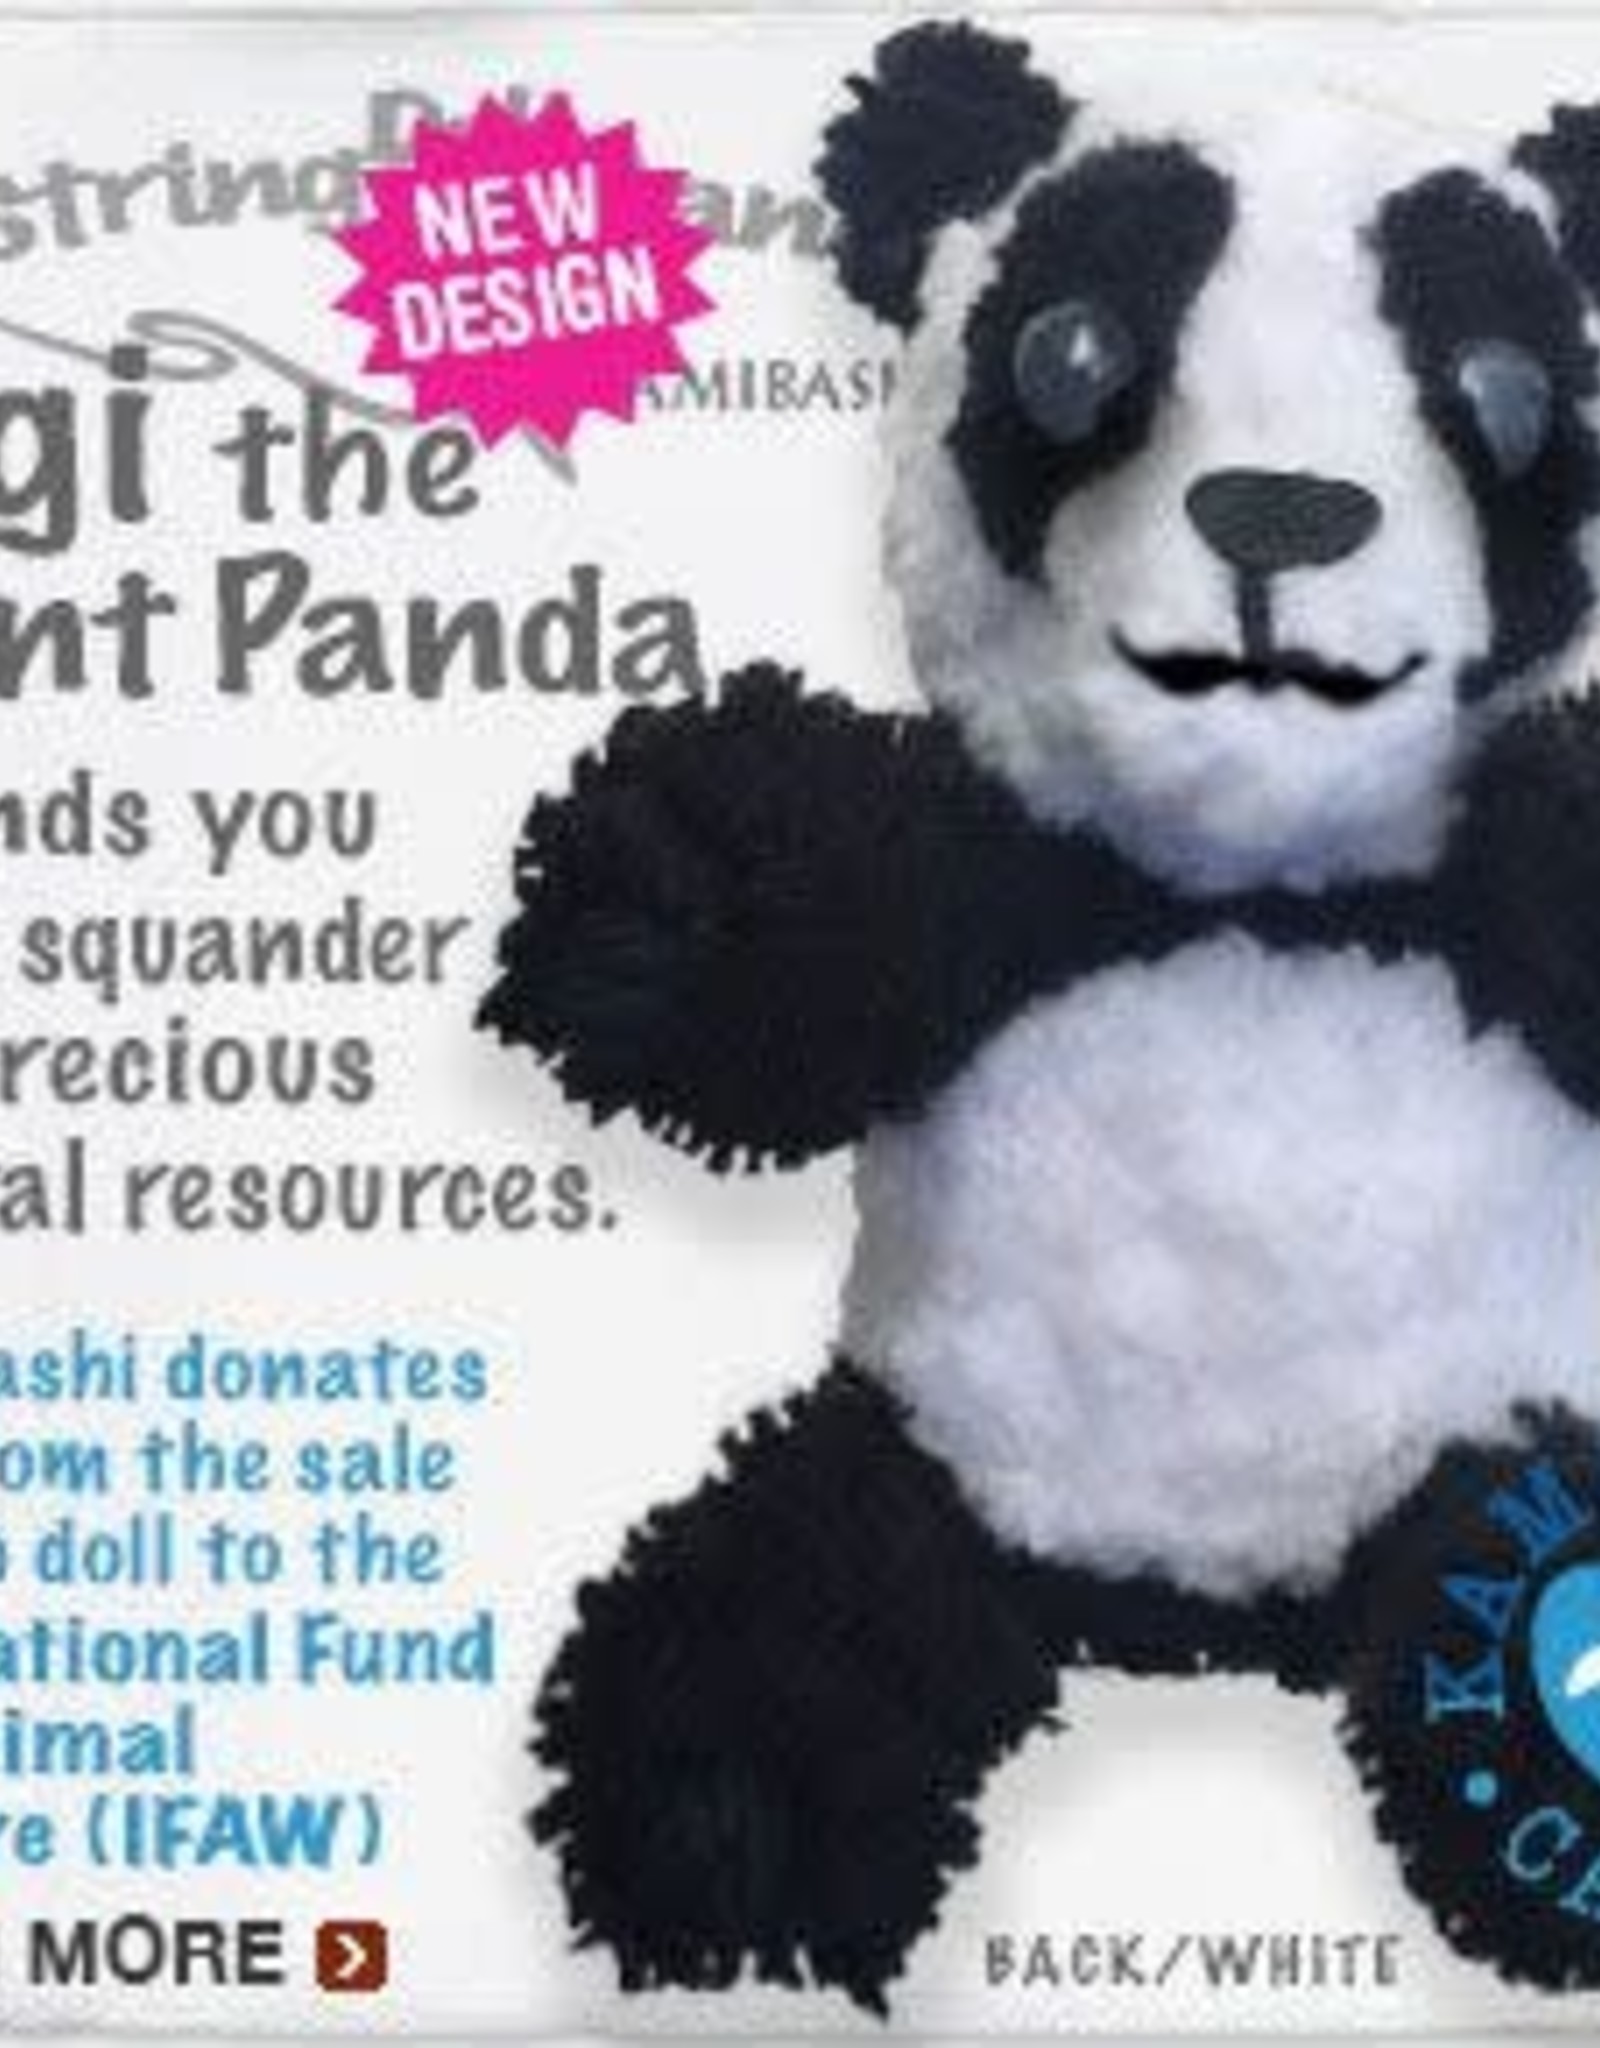 Kamibashi Gigi The Giant Panda